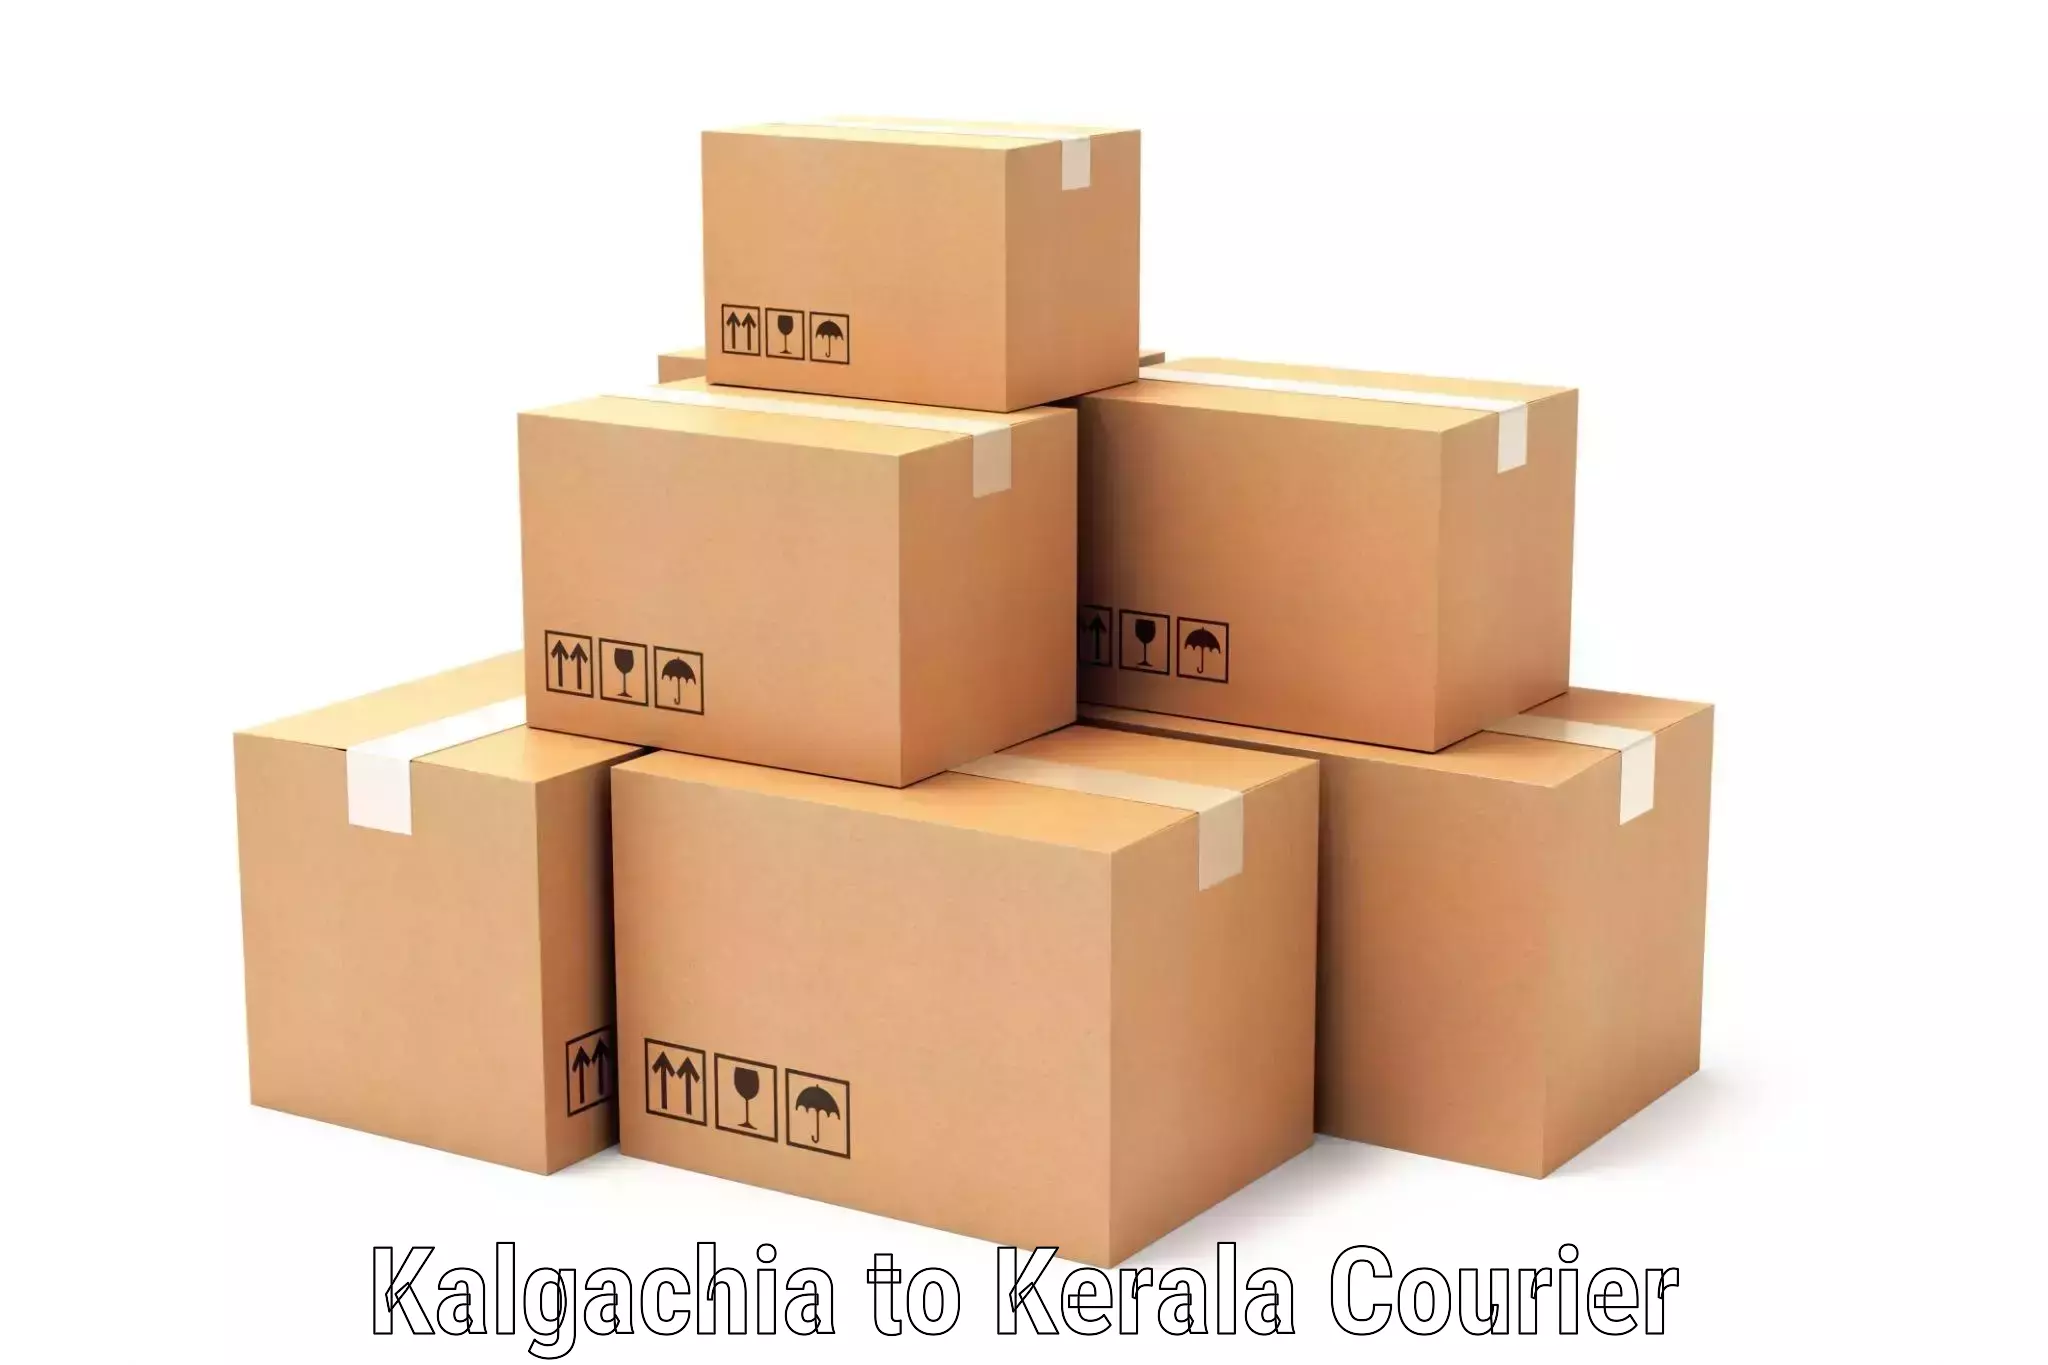 Personal courier services Kalgachia to Taliparamba